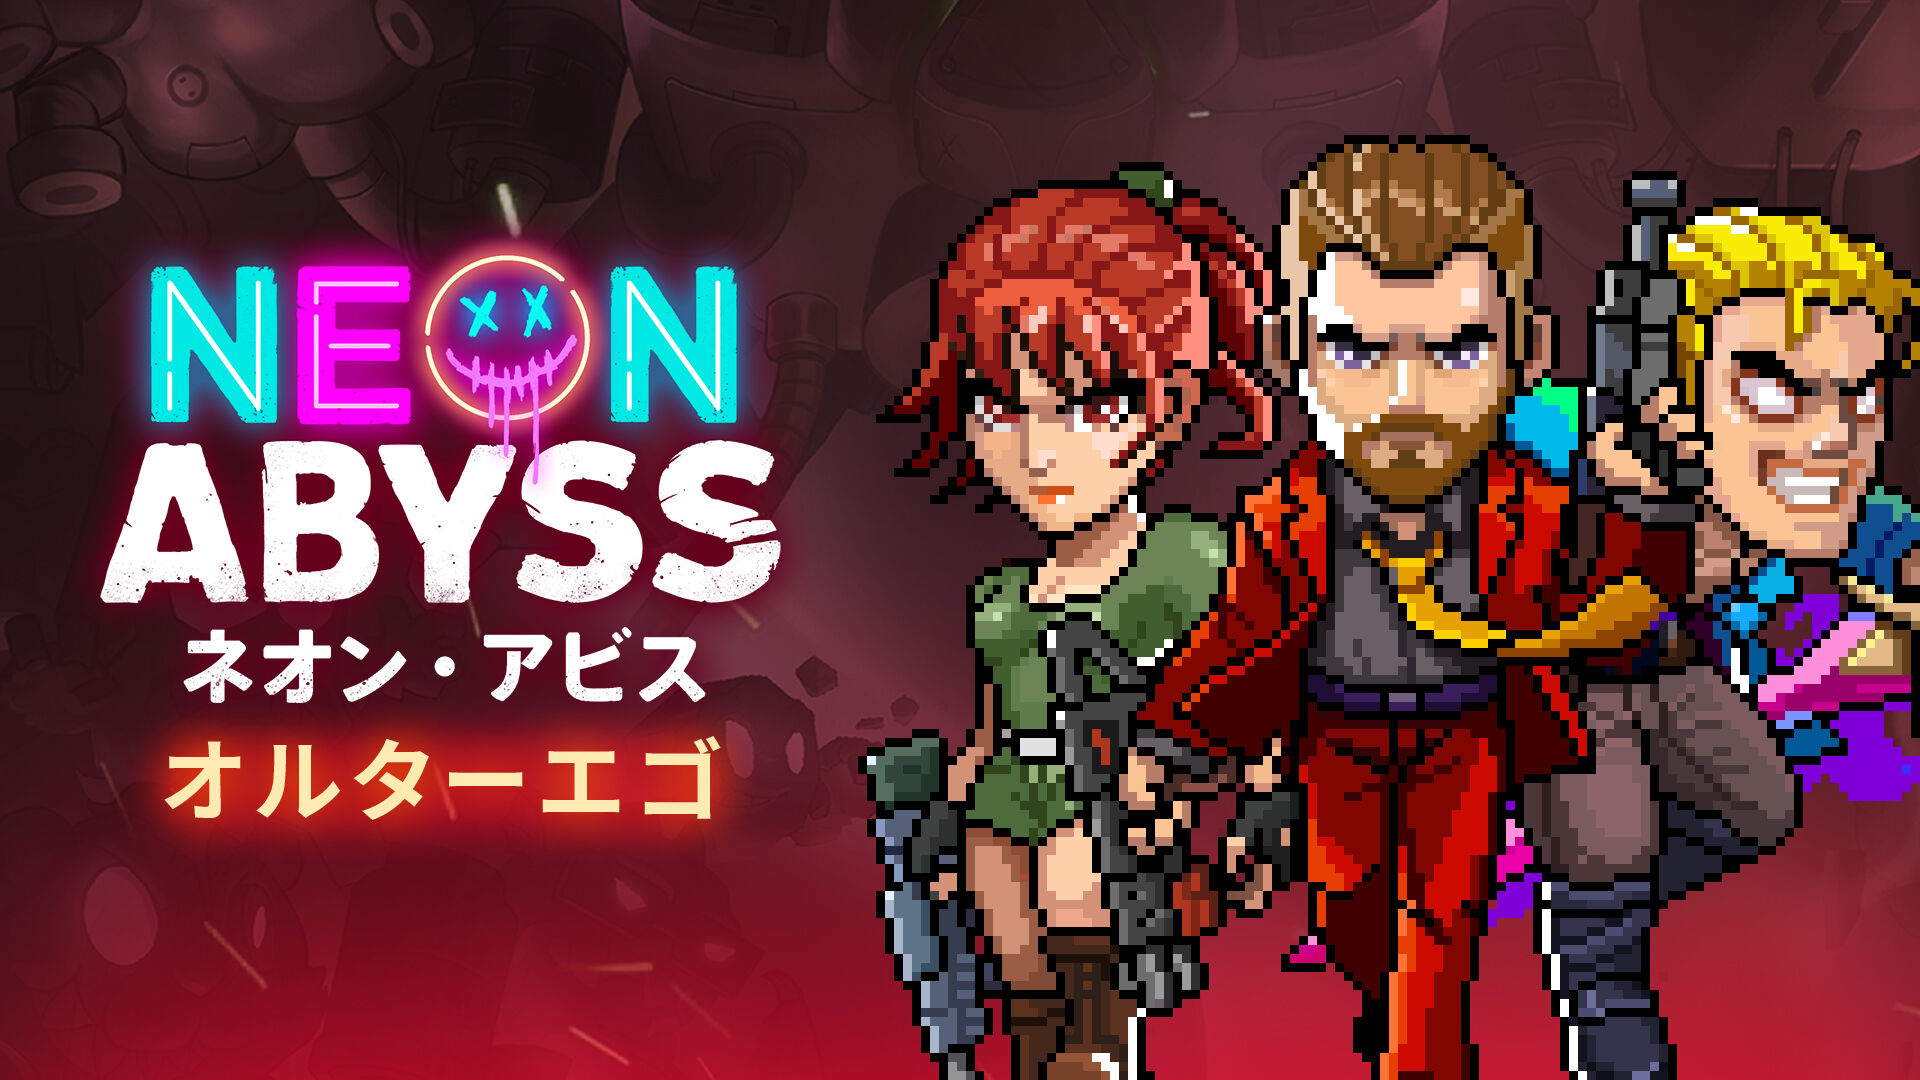 Neon Abyss ネオン・アビス